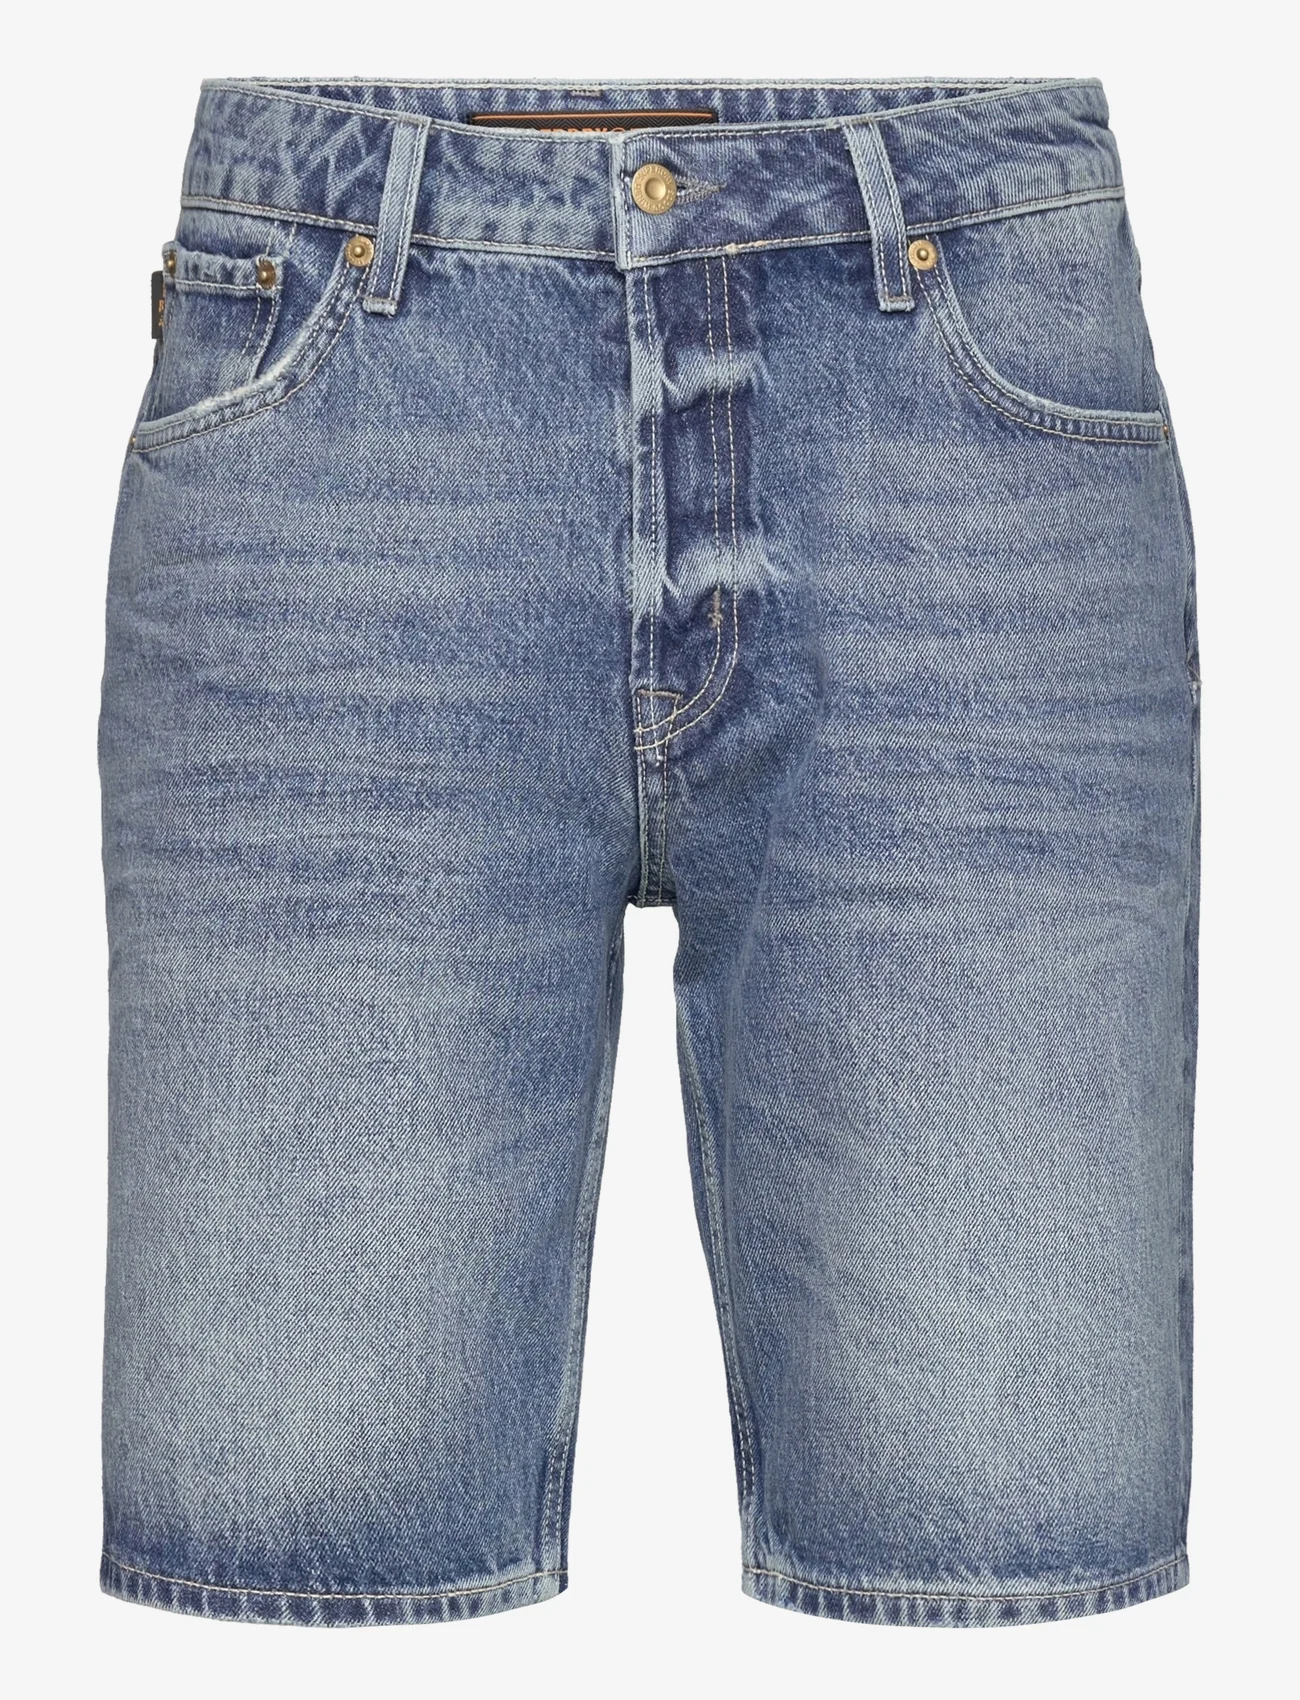 Skærpe Helt tør landmænd Superdry Vintage Straight Short - Denim shorts - Boozt.com